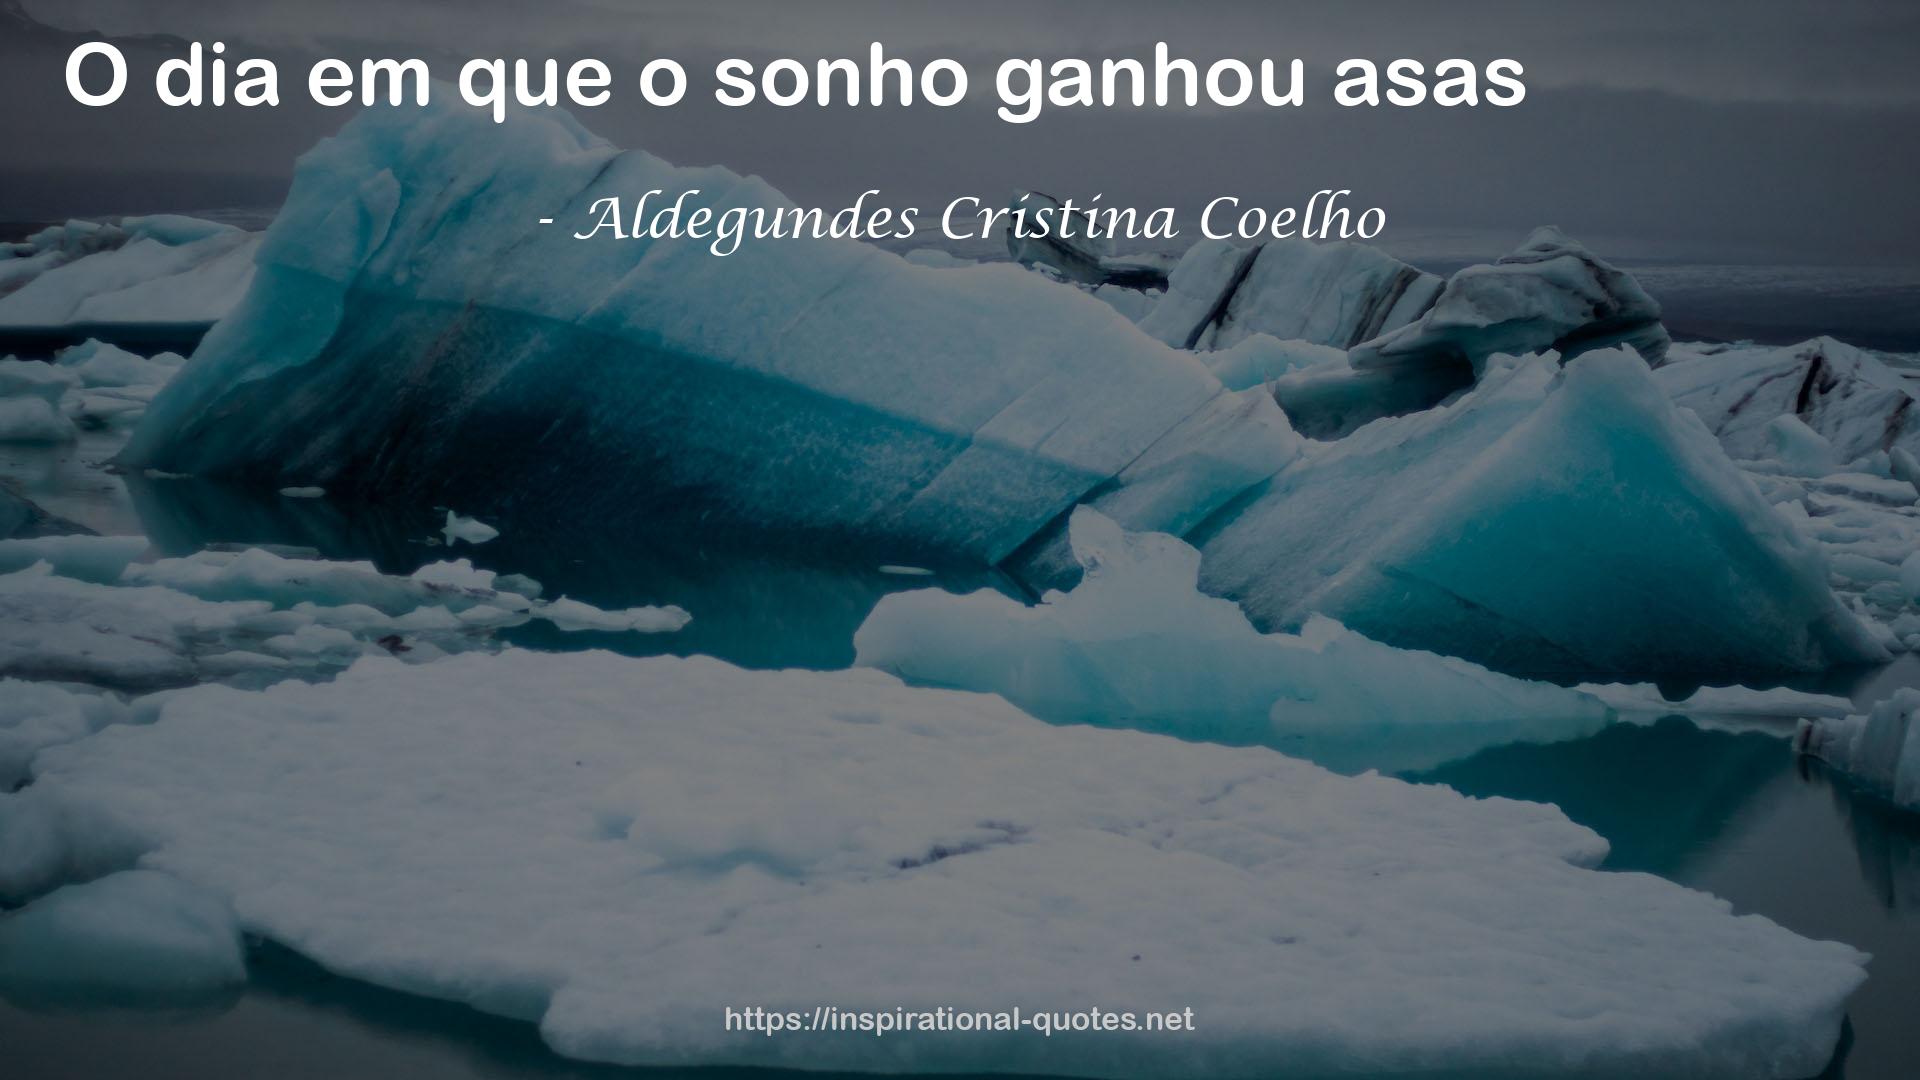 Aldegundes Cristina Coelho QUOTES